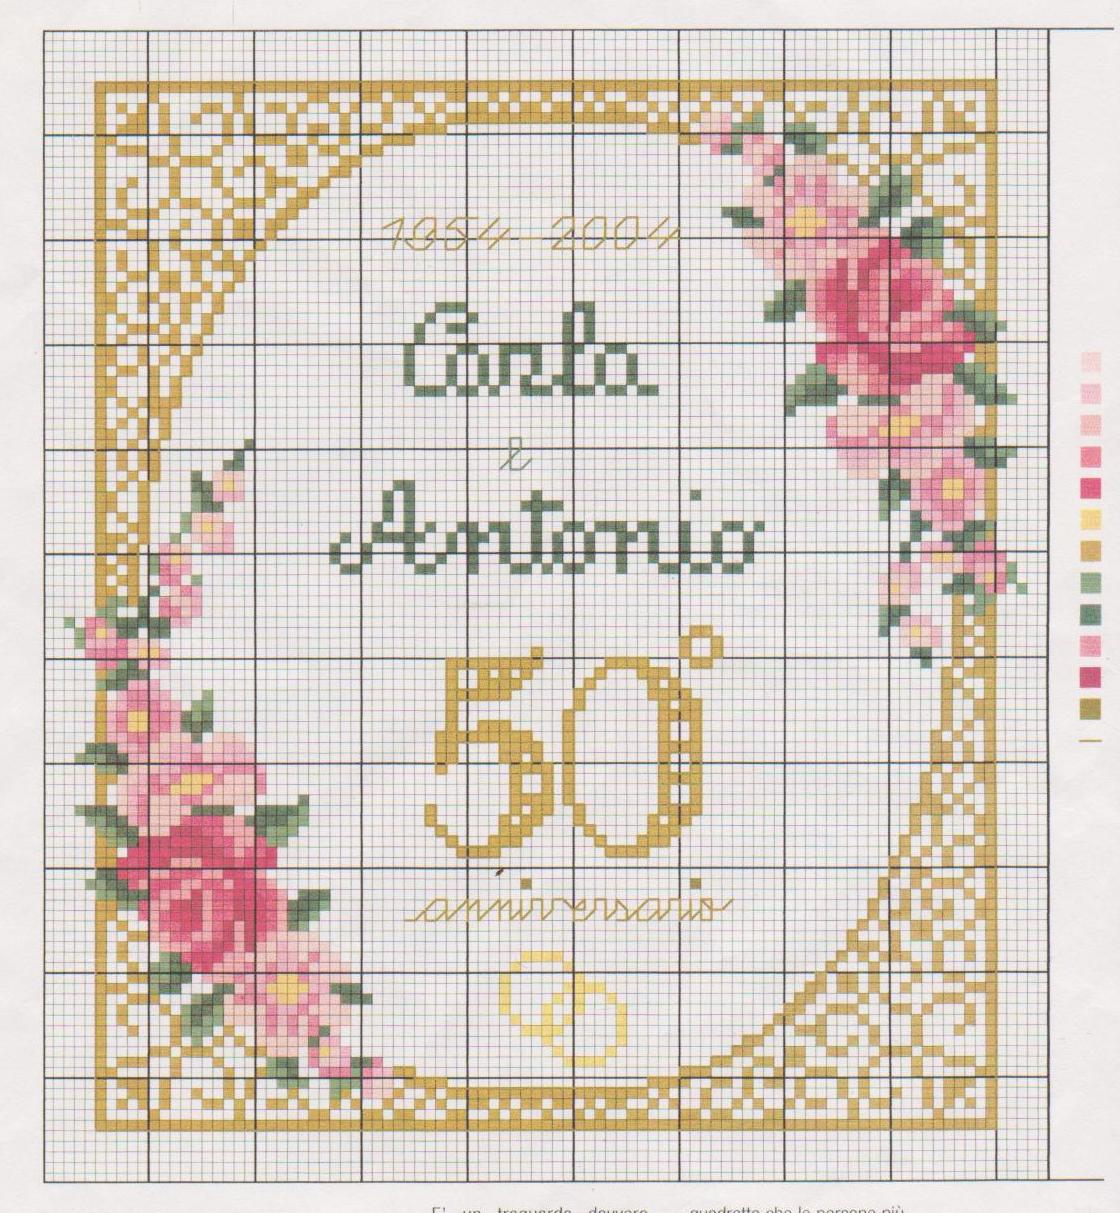 Gold anniversary cross stitch pattern